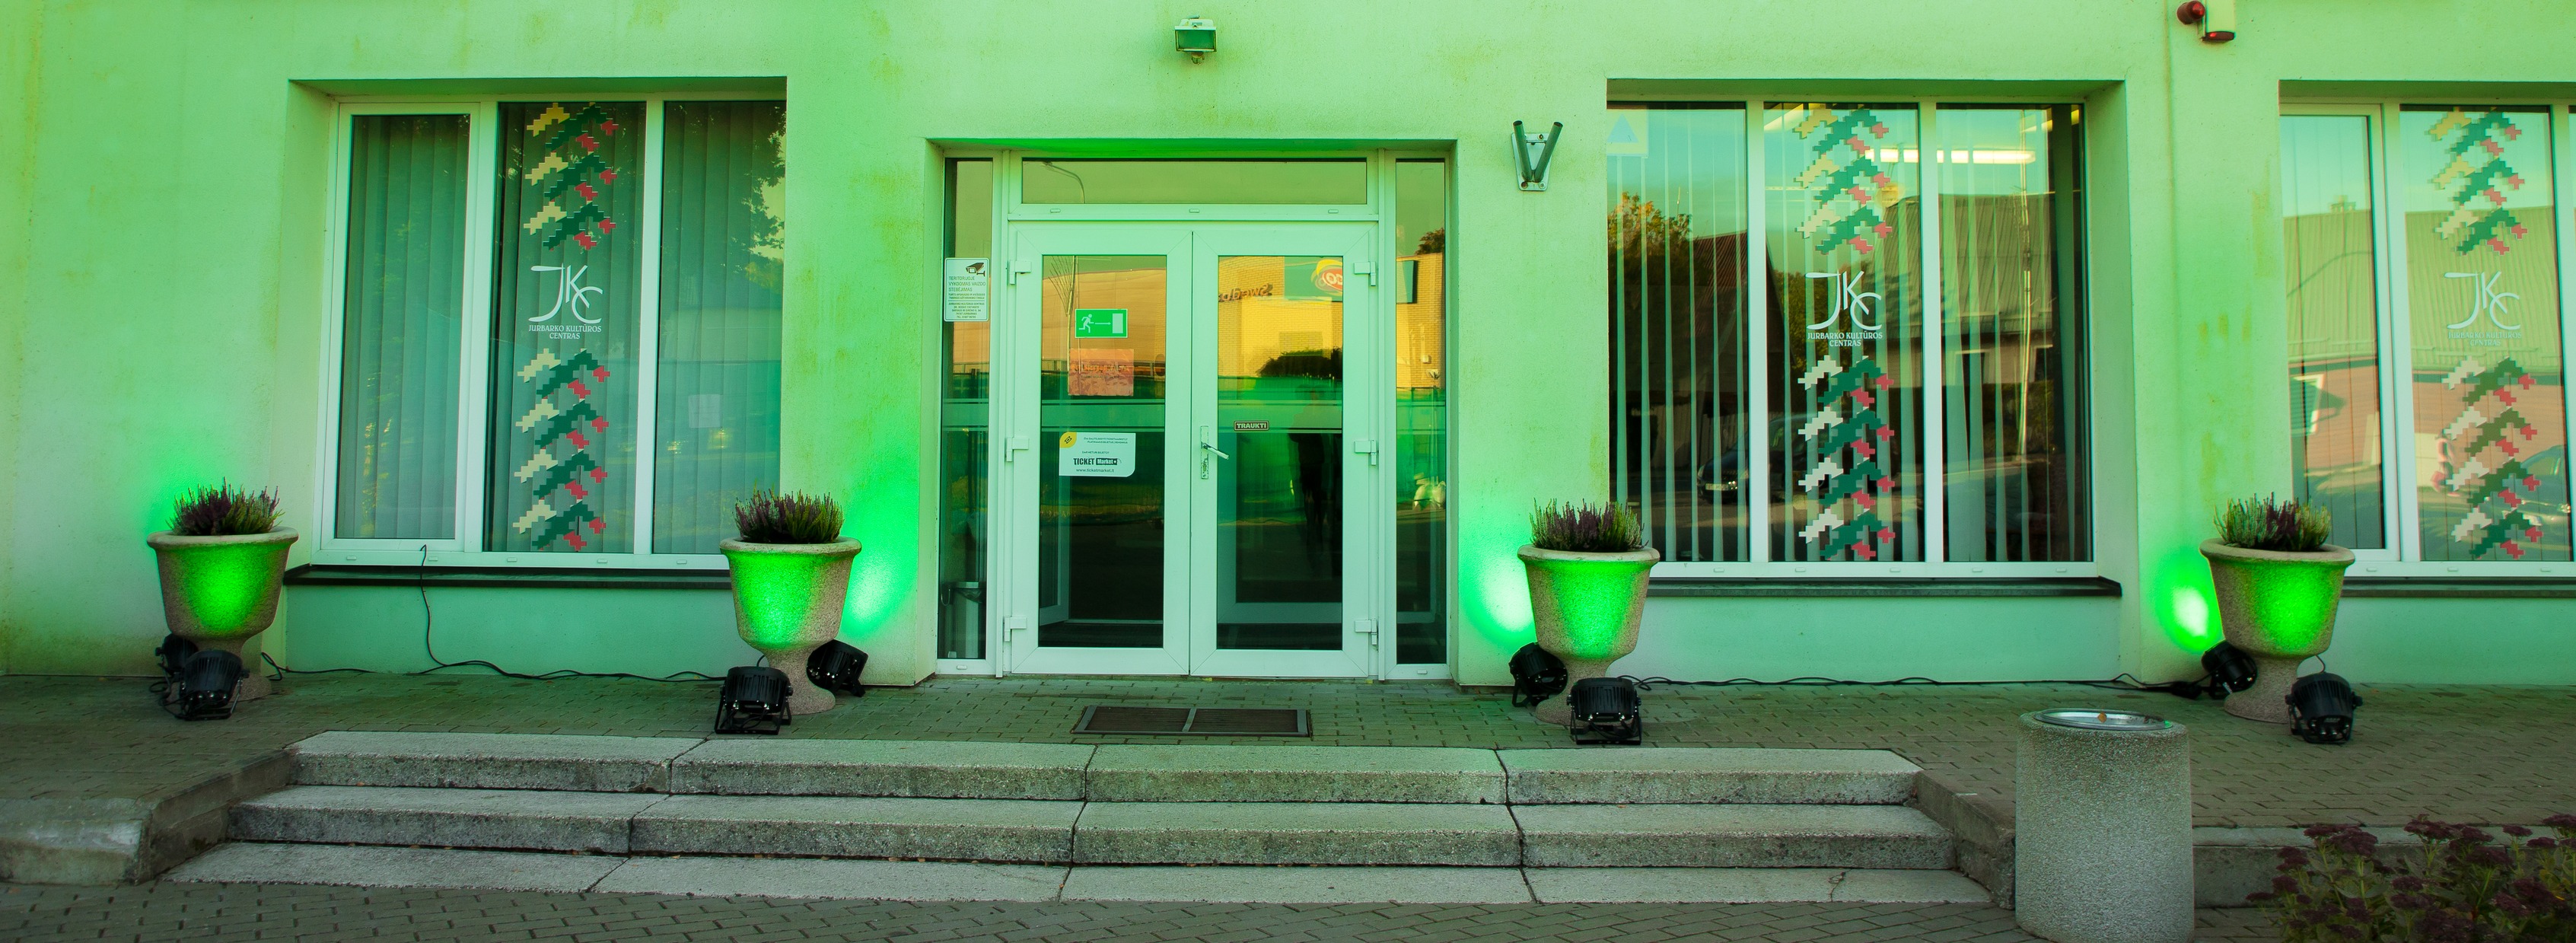 Jurbarko kultūros centras jungiasi prie „Jaunimo linijos“ organizuojamos akcijos „Žalia šviesa gyvenimui“ – spalio 10-ąją Jurbarko kultūros centras šviečia žalia spalva